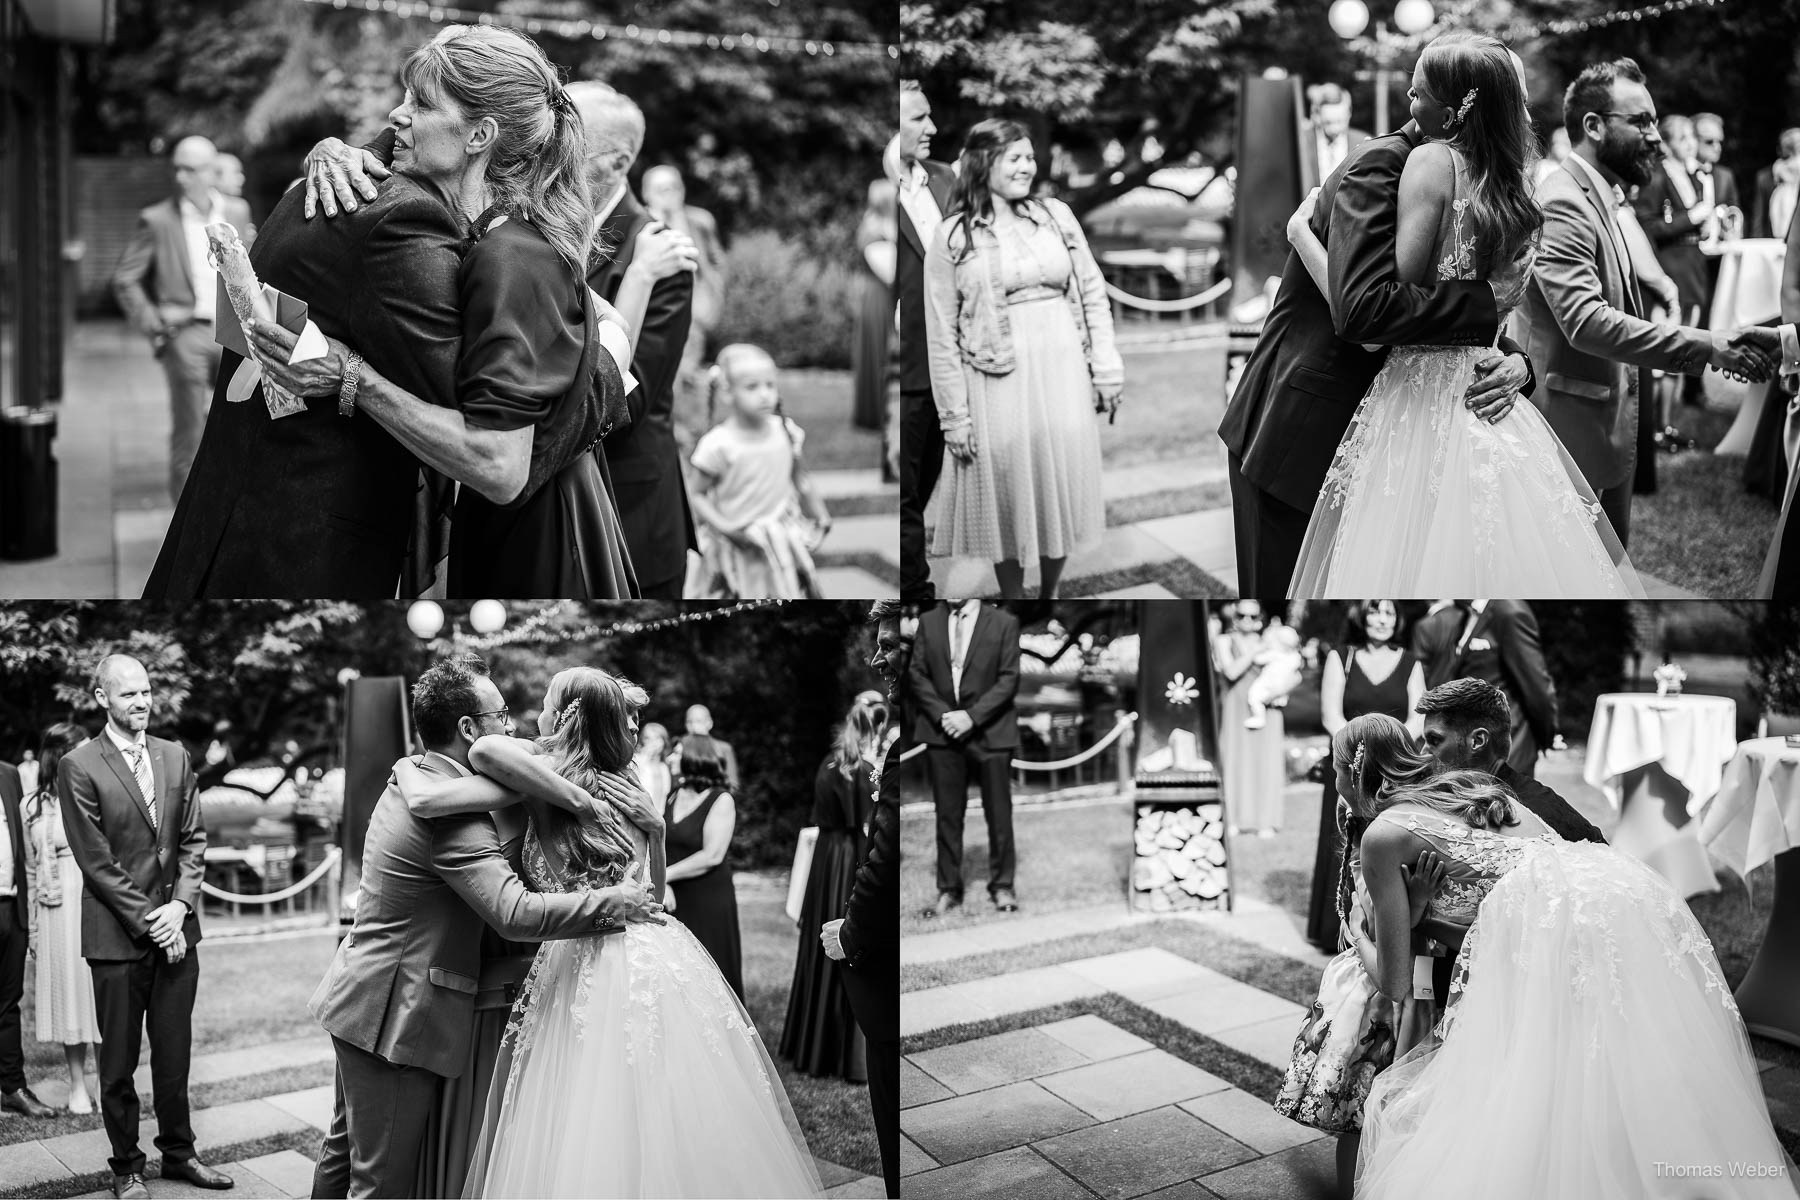 Hochzeitsempfang und Gratulation im Garten des Landhaus Etzhorn Oldenburg, Hochzeitsfotograf Thomas Weber aus Oldenburg